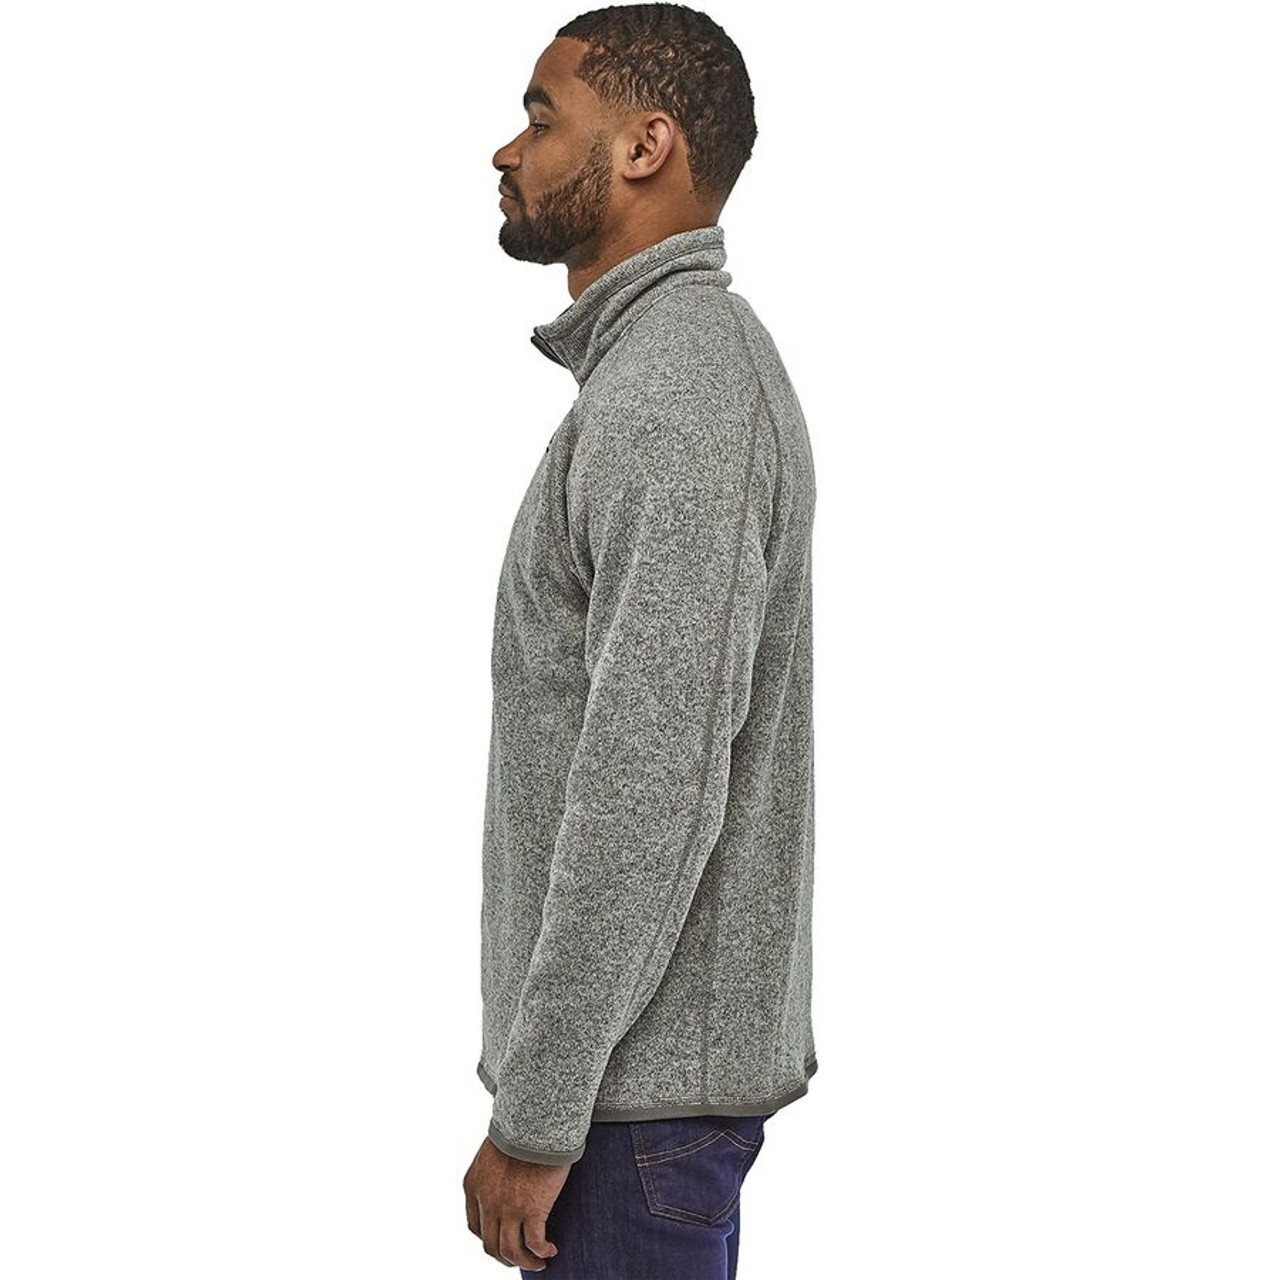 Men's Better Sweater 1/4 Zip - Black Mingo